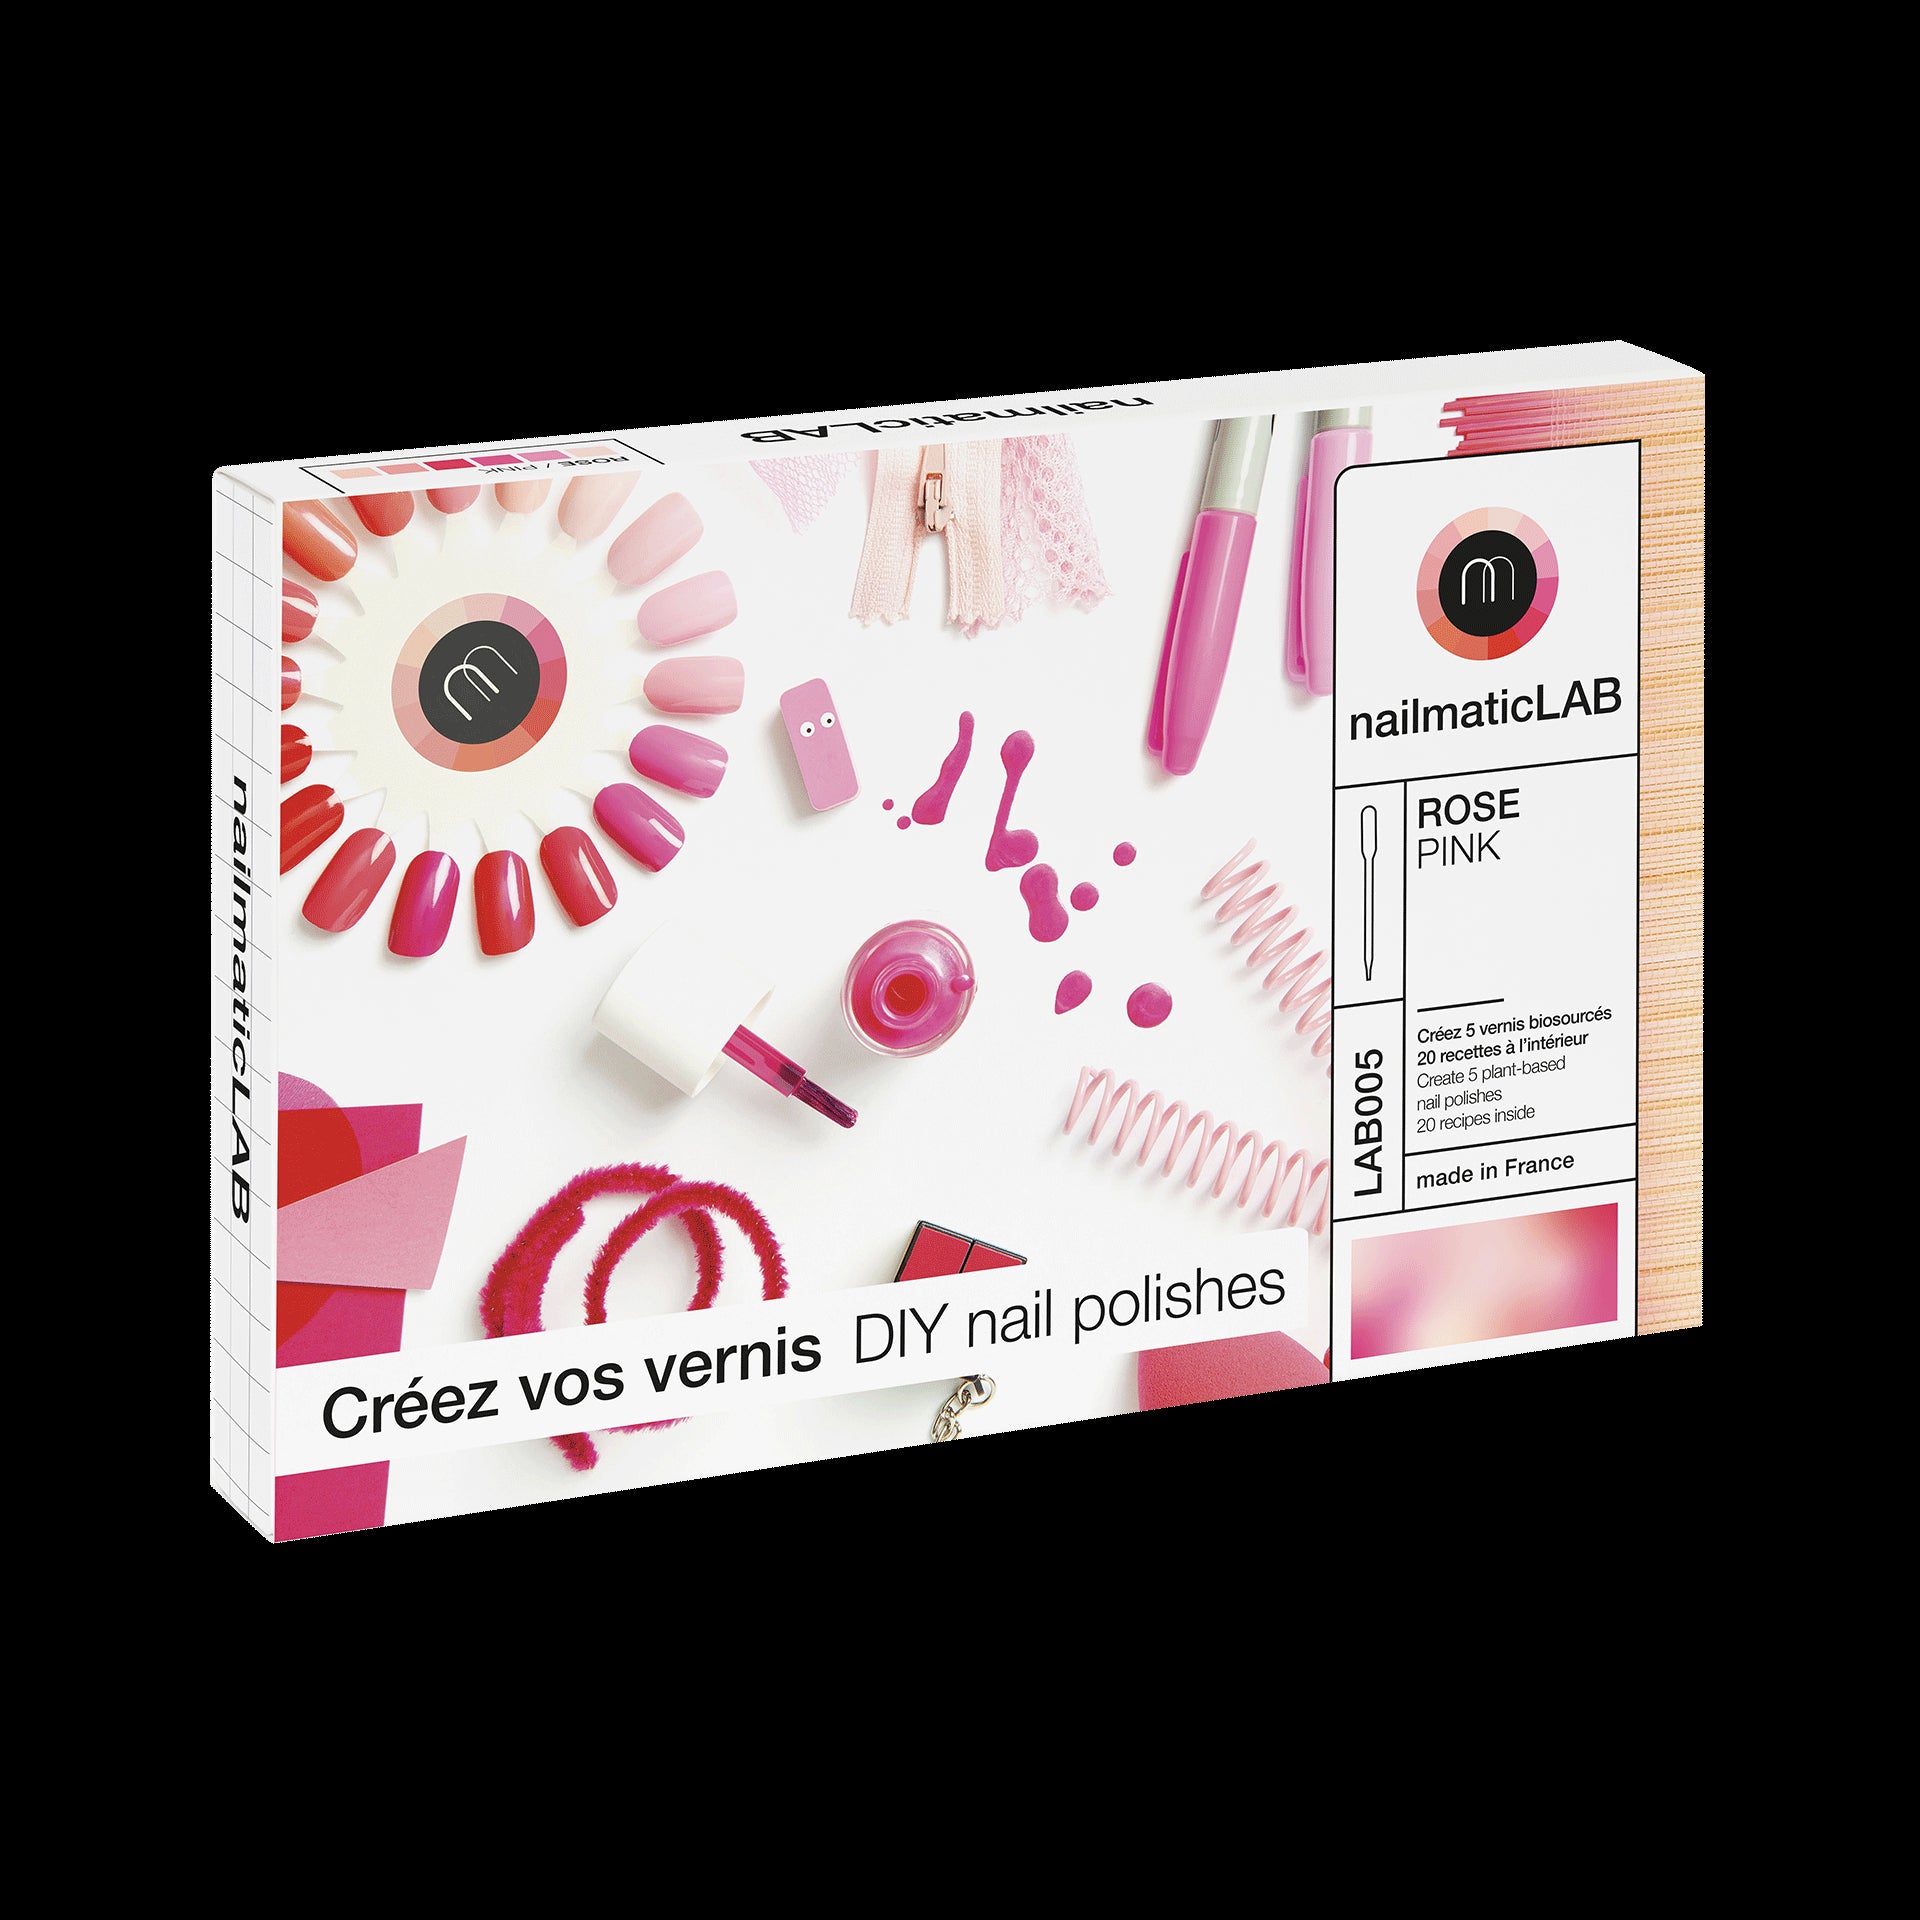 diy nail polish kit make your own pink nail polish